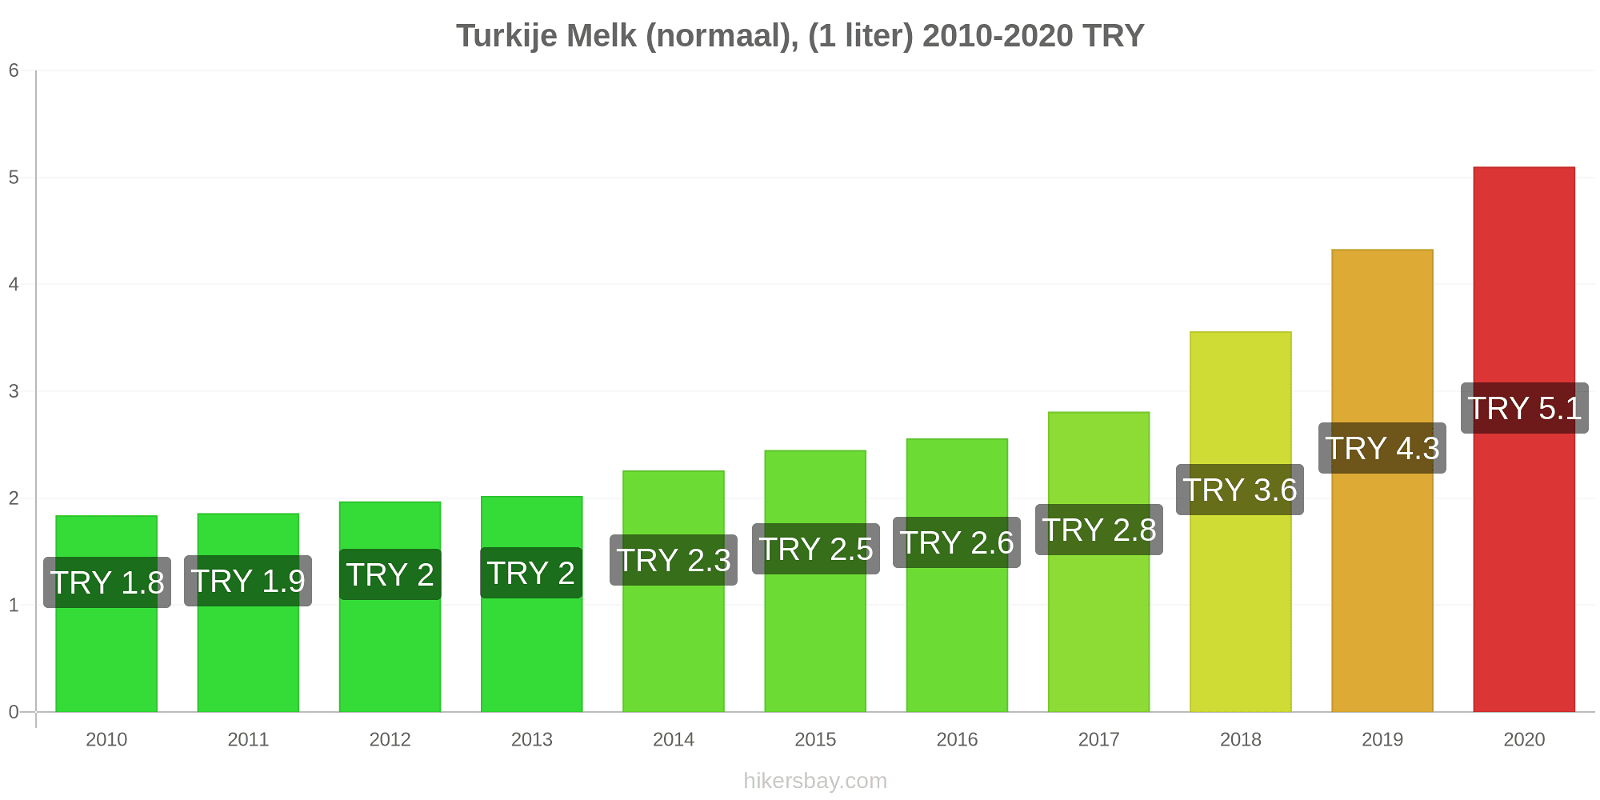 Turkije prijswijzigingen Melk (regelmatige), (1 liter) hikersbay.com